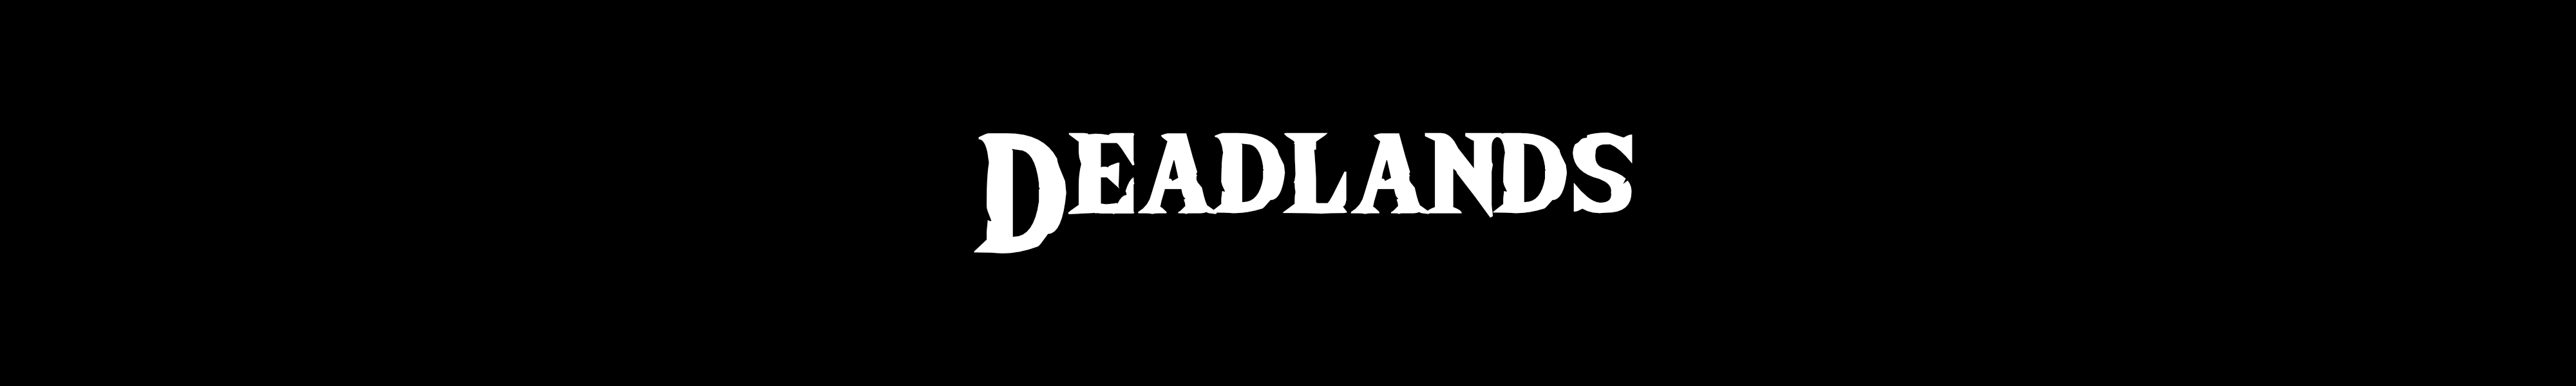 Deadlands banner